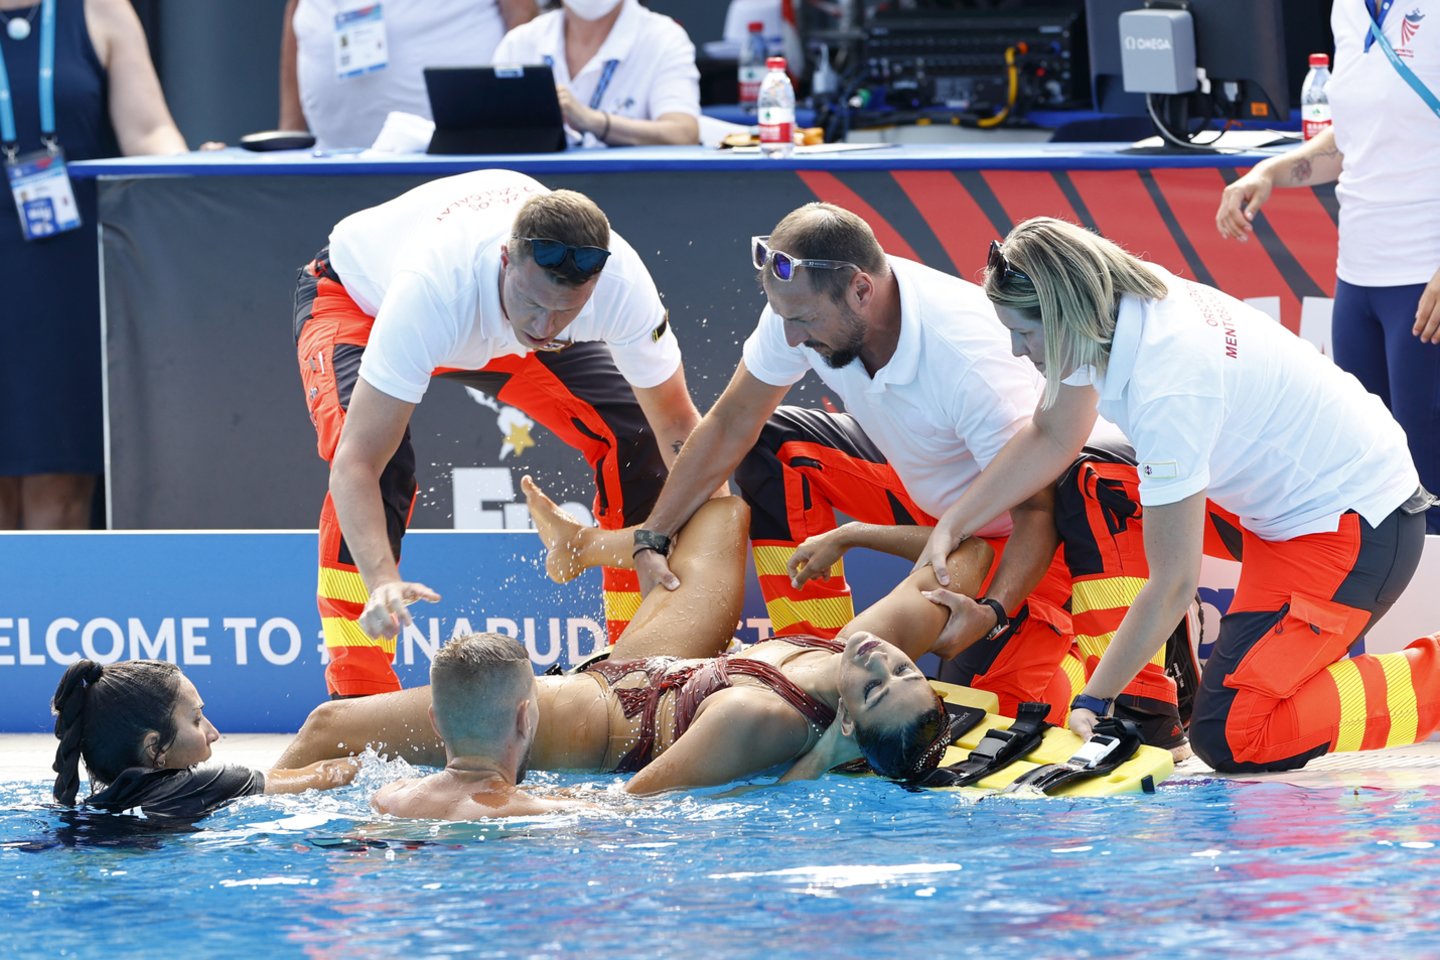  Vengrijoje tęsiasi plaukimo pasaulio čempionatas, kuriame trečiadienį vos neįvyko tragedija. Sinchroninio plaukimo laisvosios programos finale plaukusi amerikietė Anita Alvarez nualpo vandenyje. <br> Reuters/Scanpix nuotr.